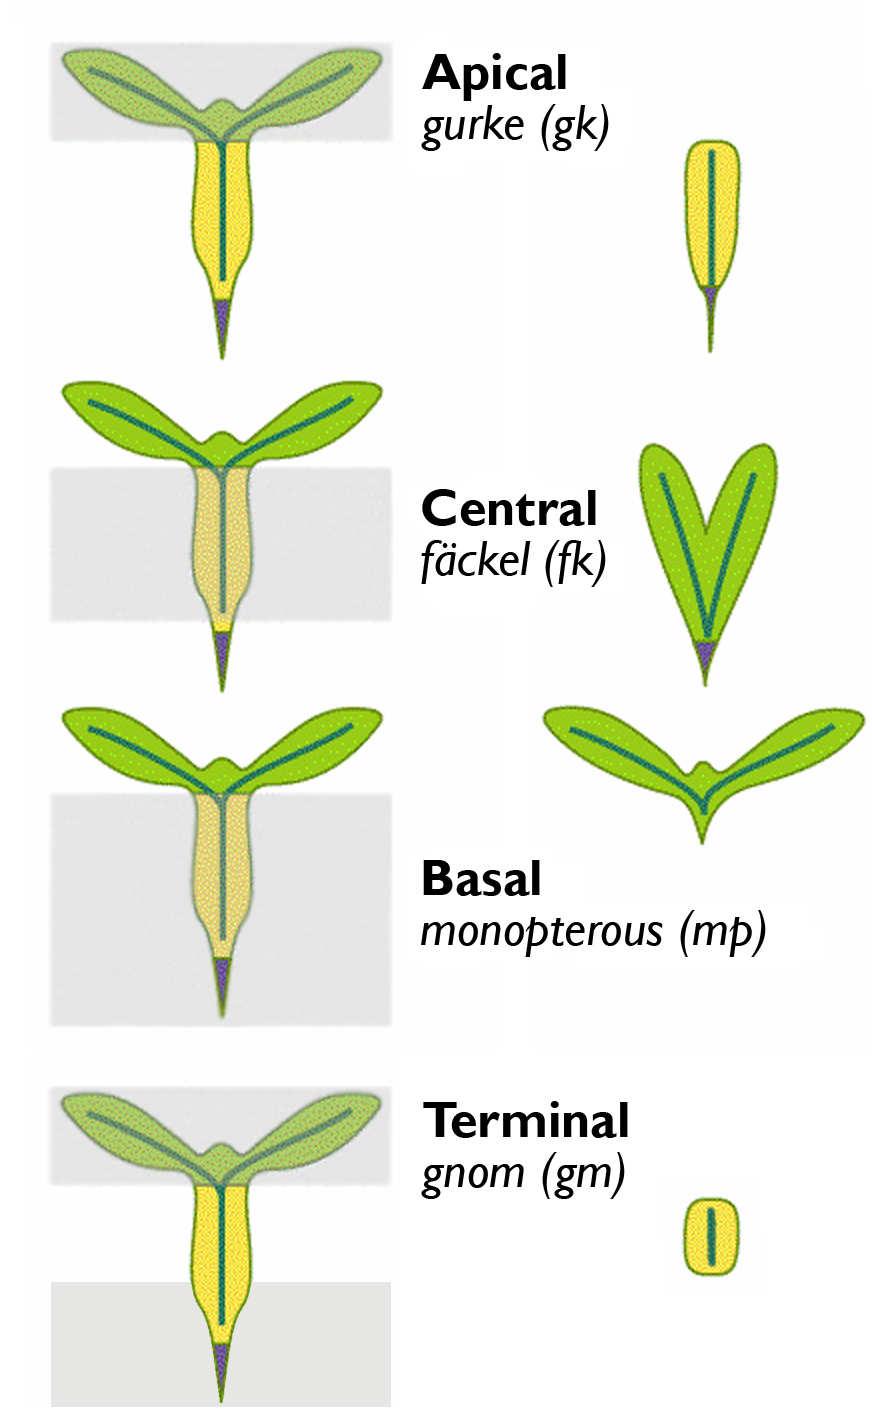 Třídy embryonálních mutantů - specifická delece segmentů apikální mutace gurke absence děloh a apikálního meristému centrální mutace fackel absence hypokotylu bazální mutace -